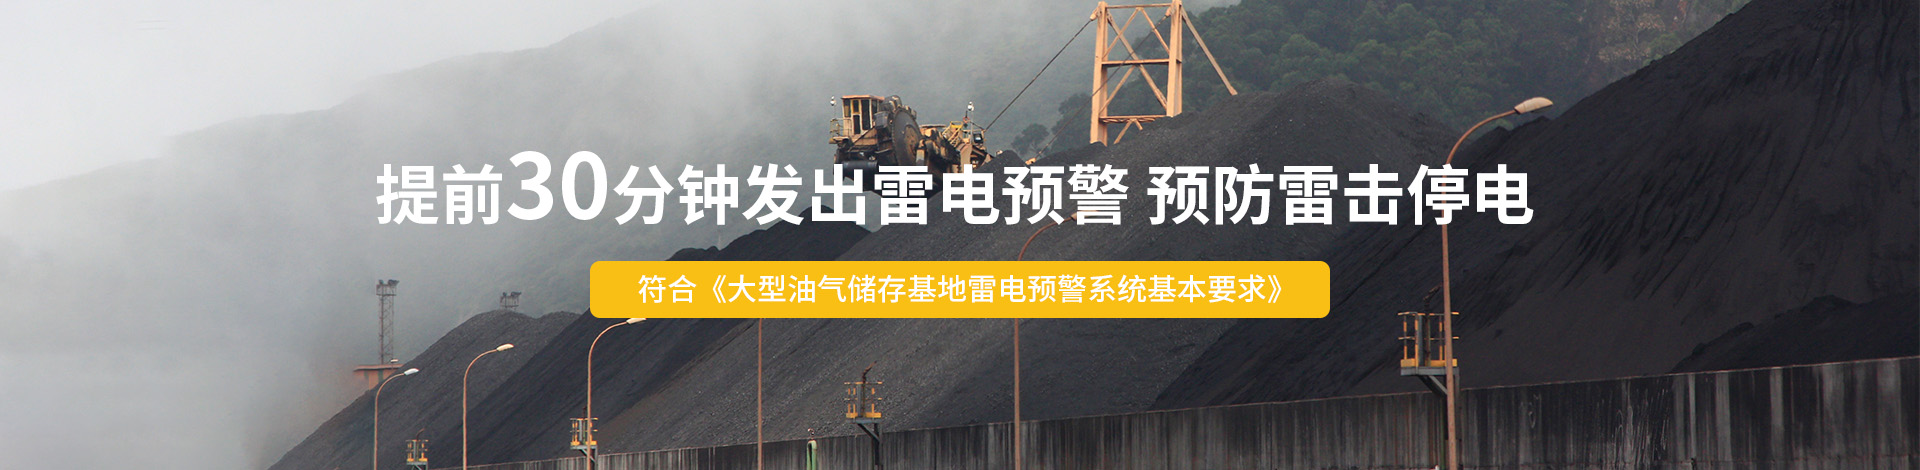 煤矿雷电预警系统